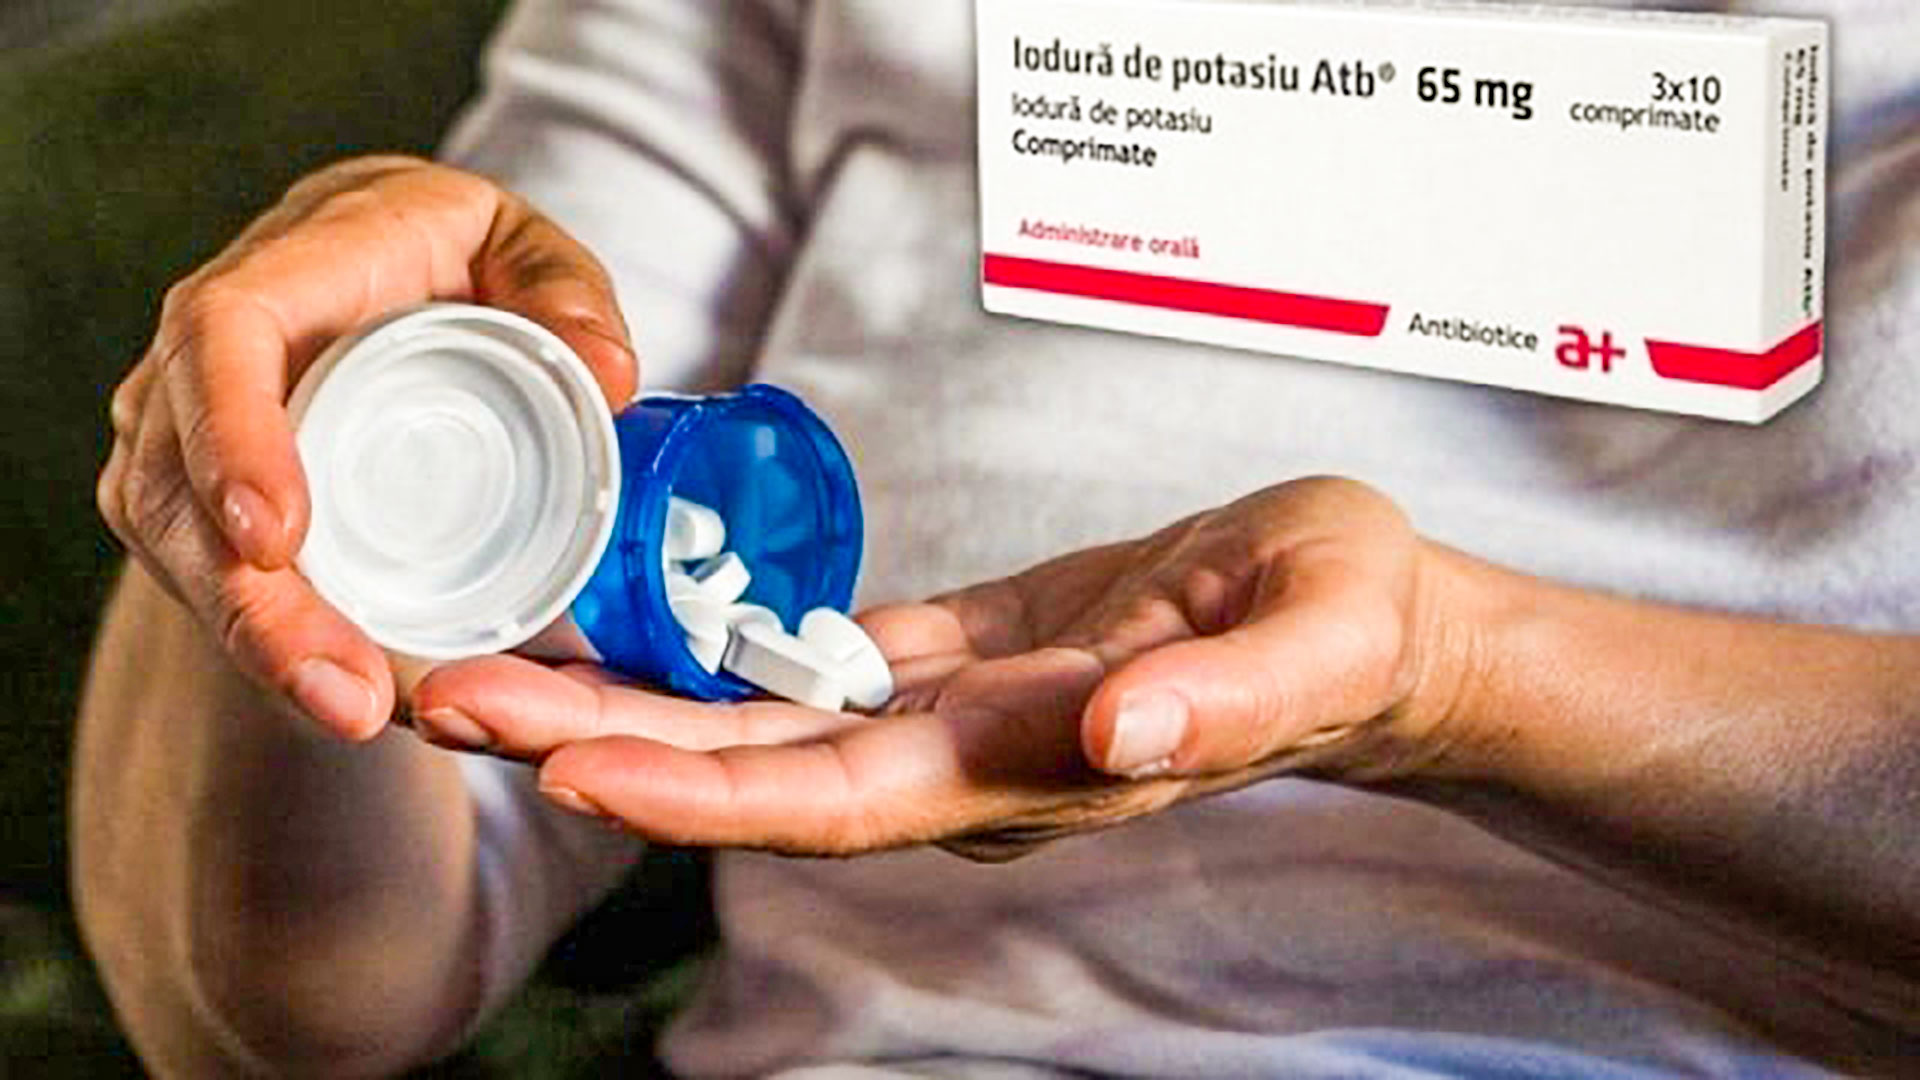 COMUNICAT DE PRESĂ –  privind modalitatea de distribuire a medicamentului iodură de potasiu 65 mg comprimate către populaţie